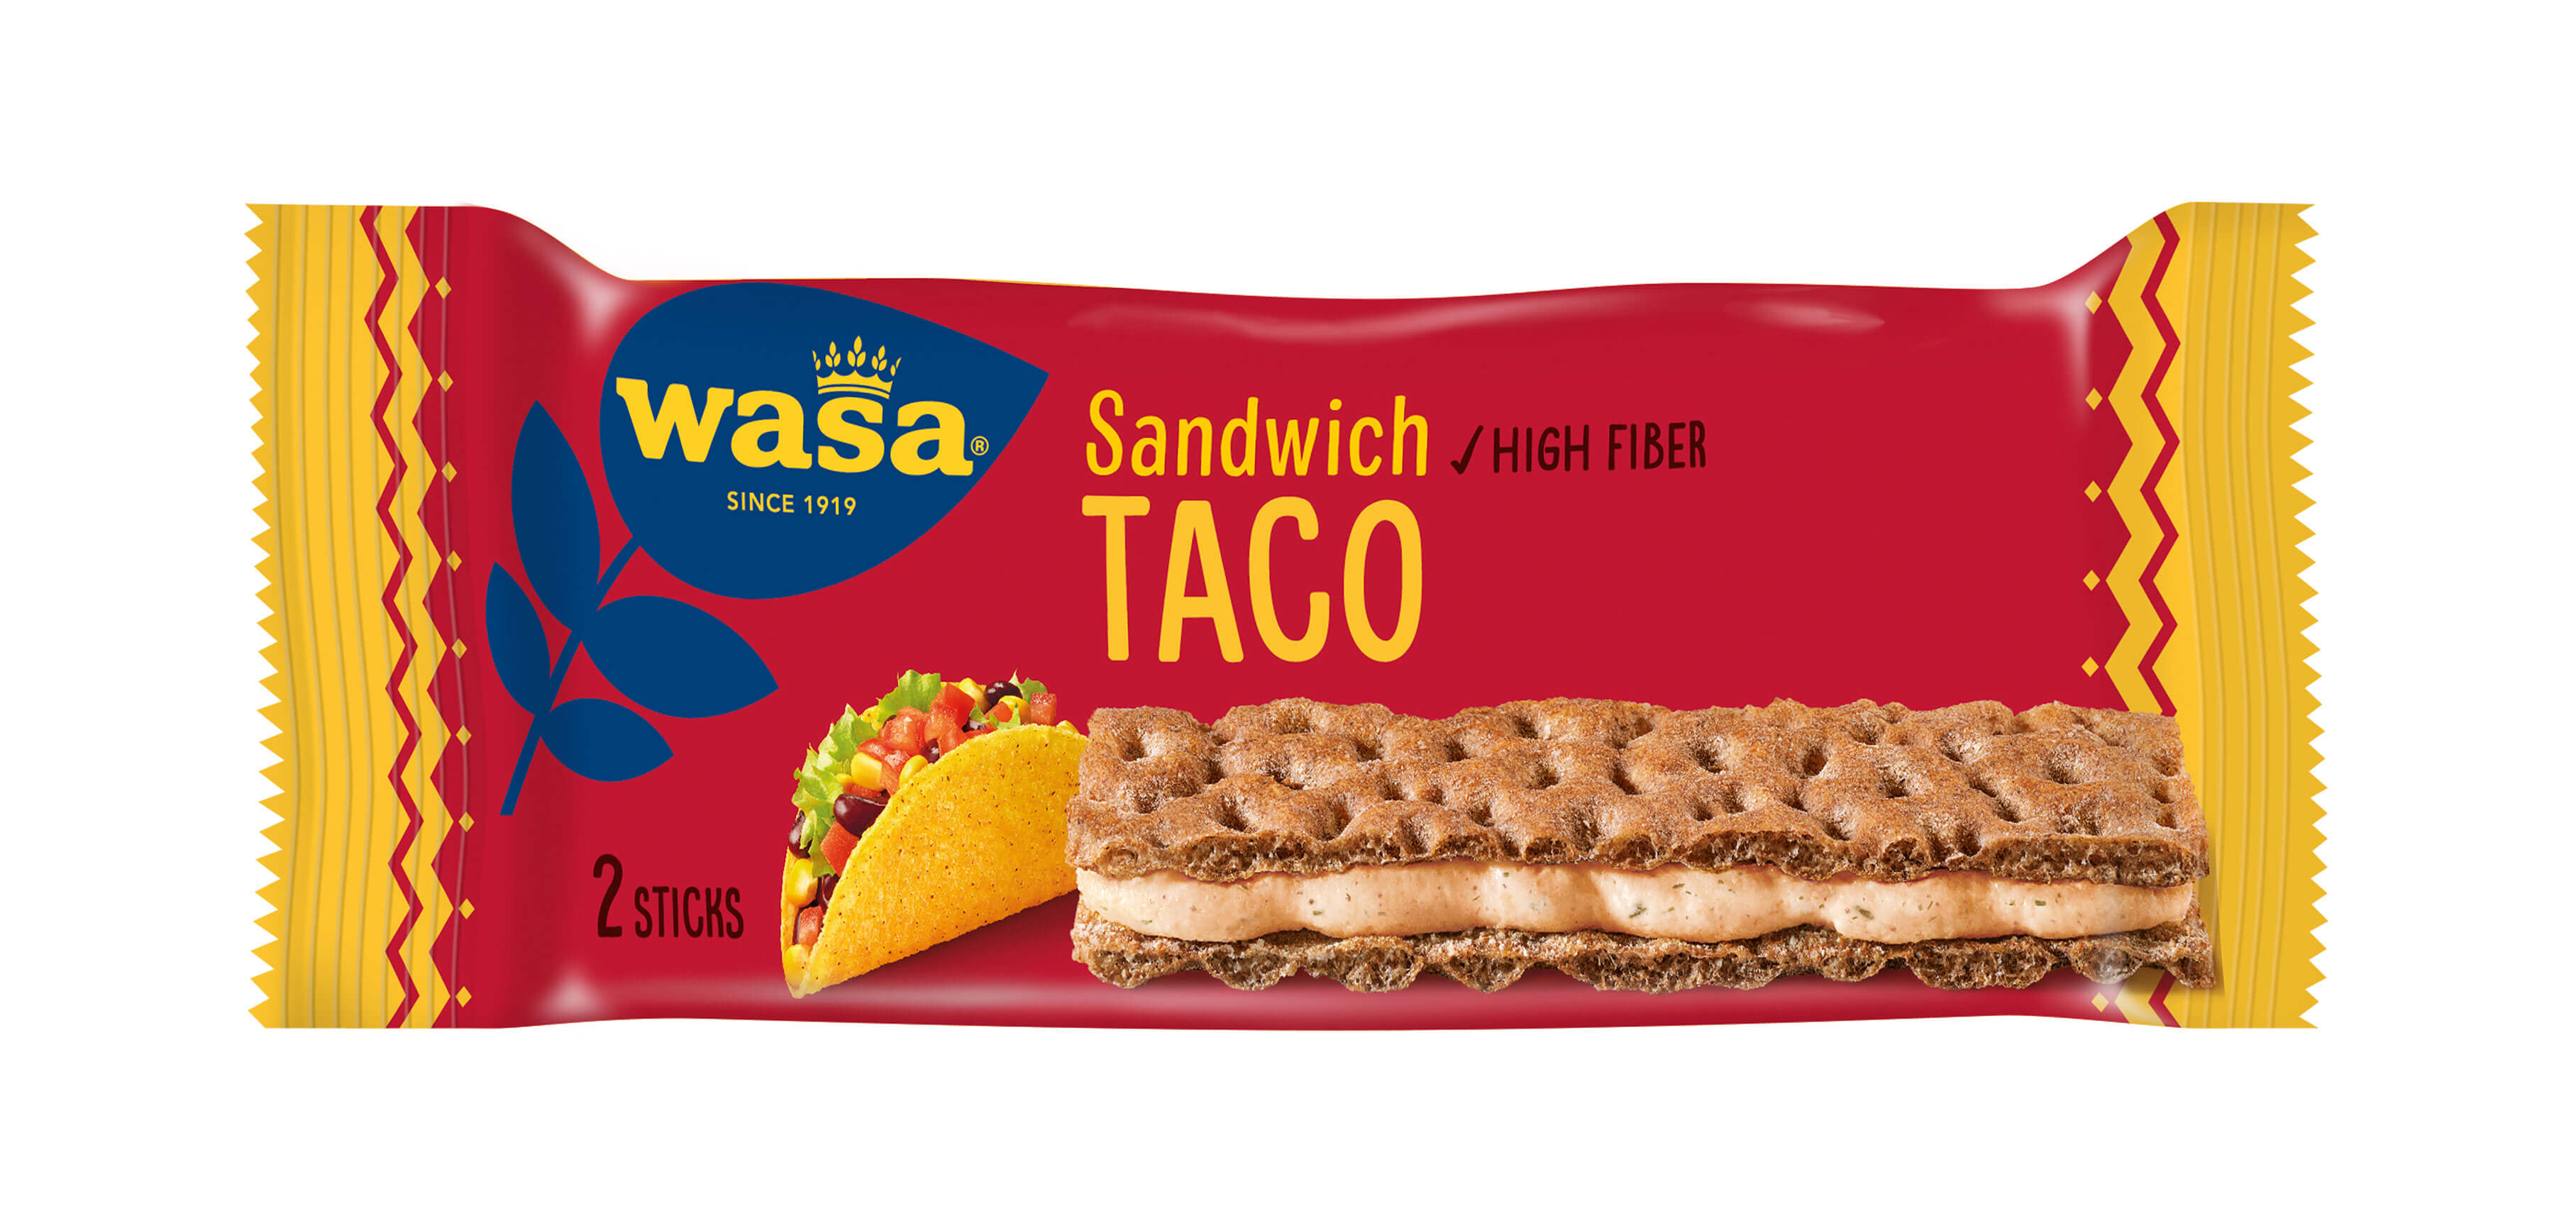 Sandwich Taco - Upptäck det perfekta mellanmålet, gott knäckebröd med krämig fyllning. Utmärkt som ett lätt mellanmål på språng.